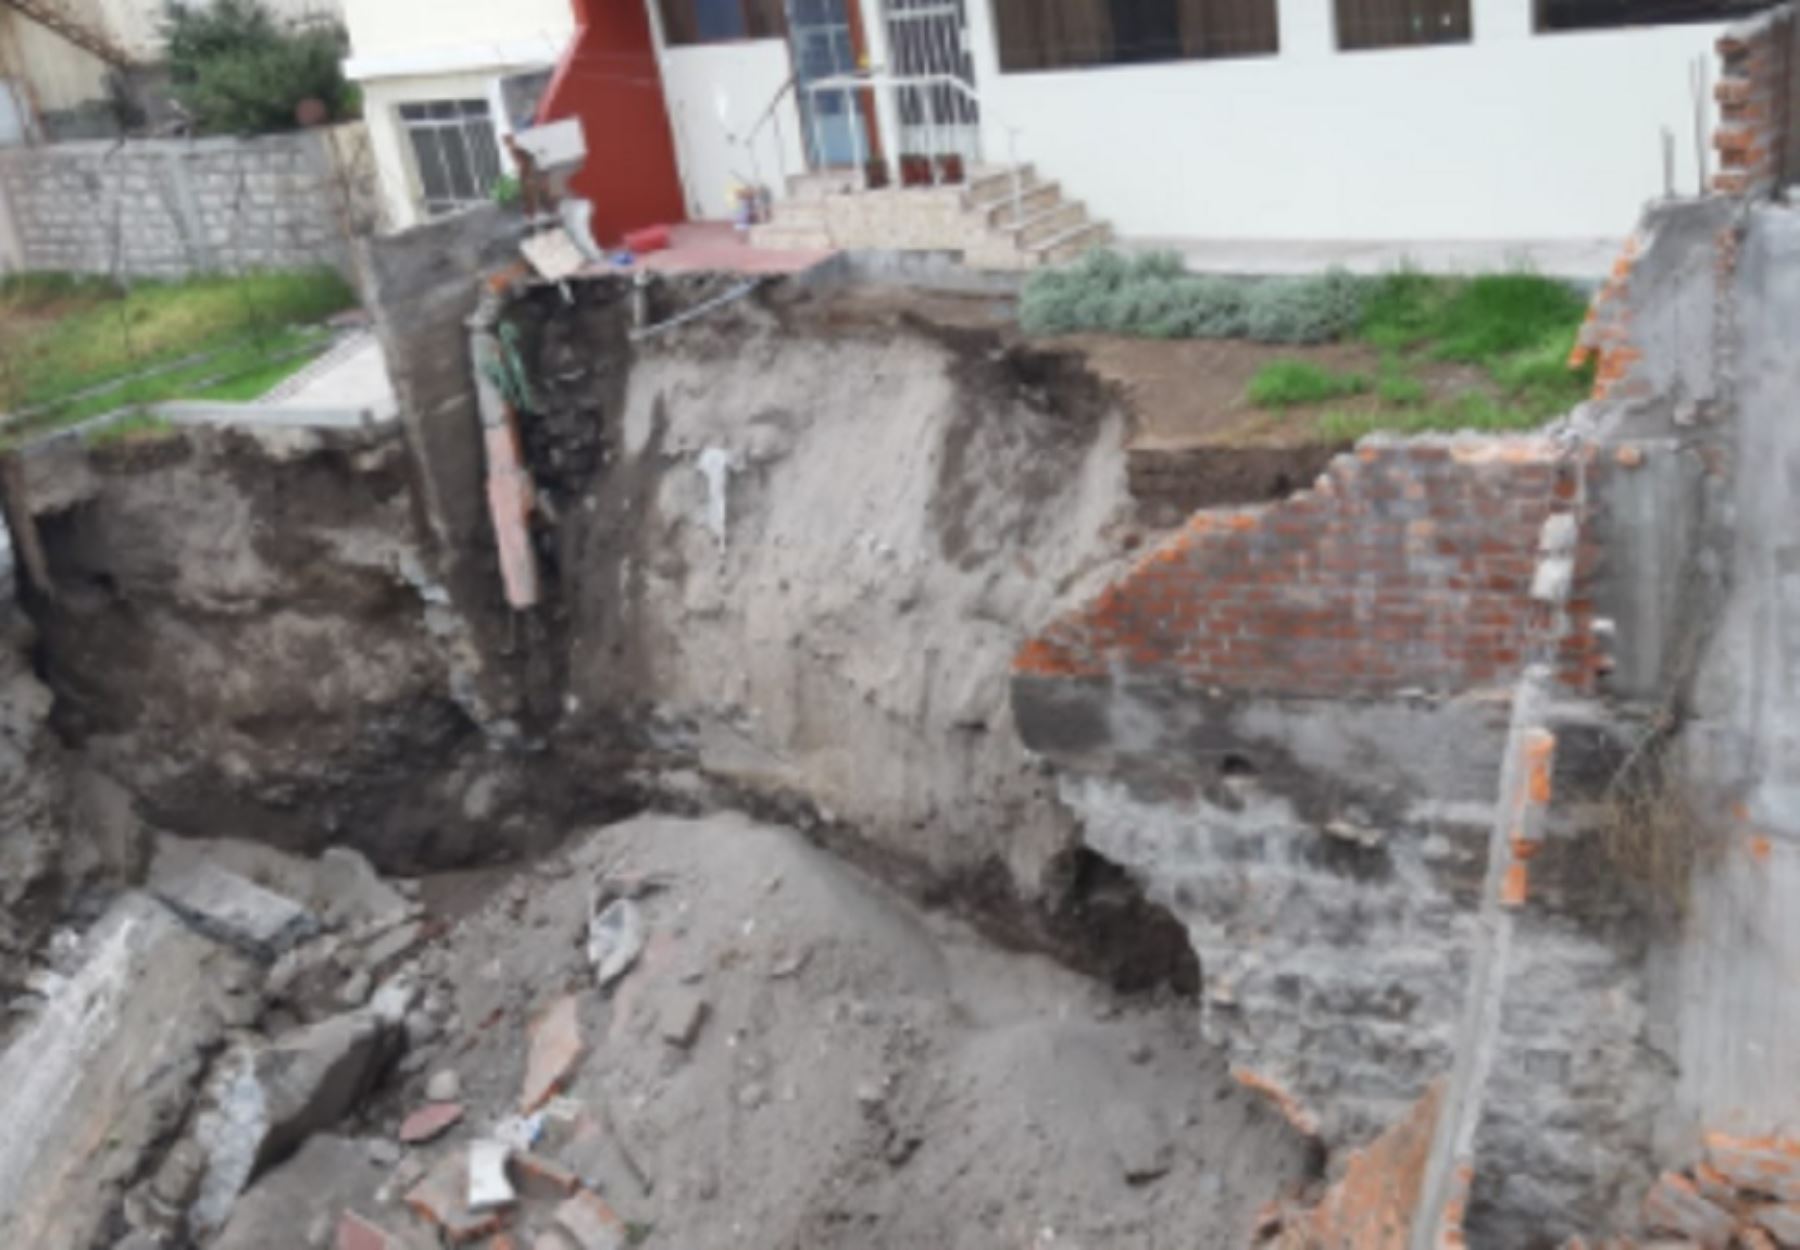 Ministerio de Desarrollo Agrario y Riego (Midagri) insta a municipio de Paucarpata descolmatar cauce afectado por huaico. Foto: Autoridad Nacional del Agua